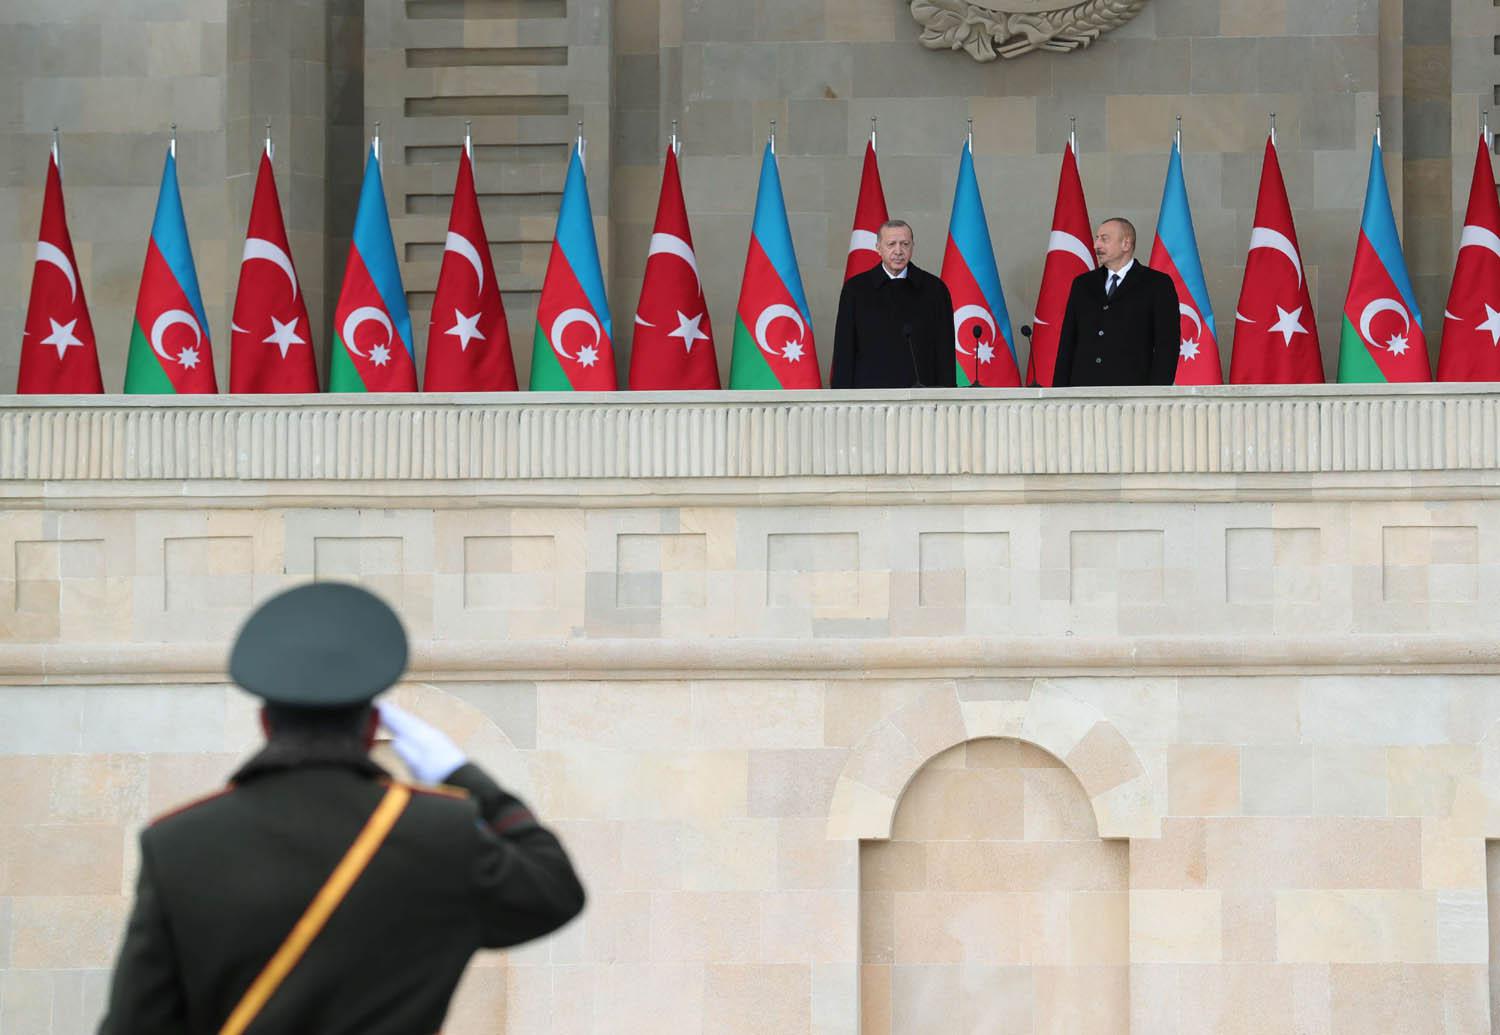 الرئيس التركي رجب طيب أردوغان يستعرض قوات أذرية بحضور الرئيس إلهام علييف